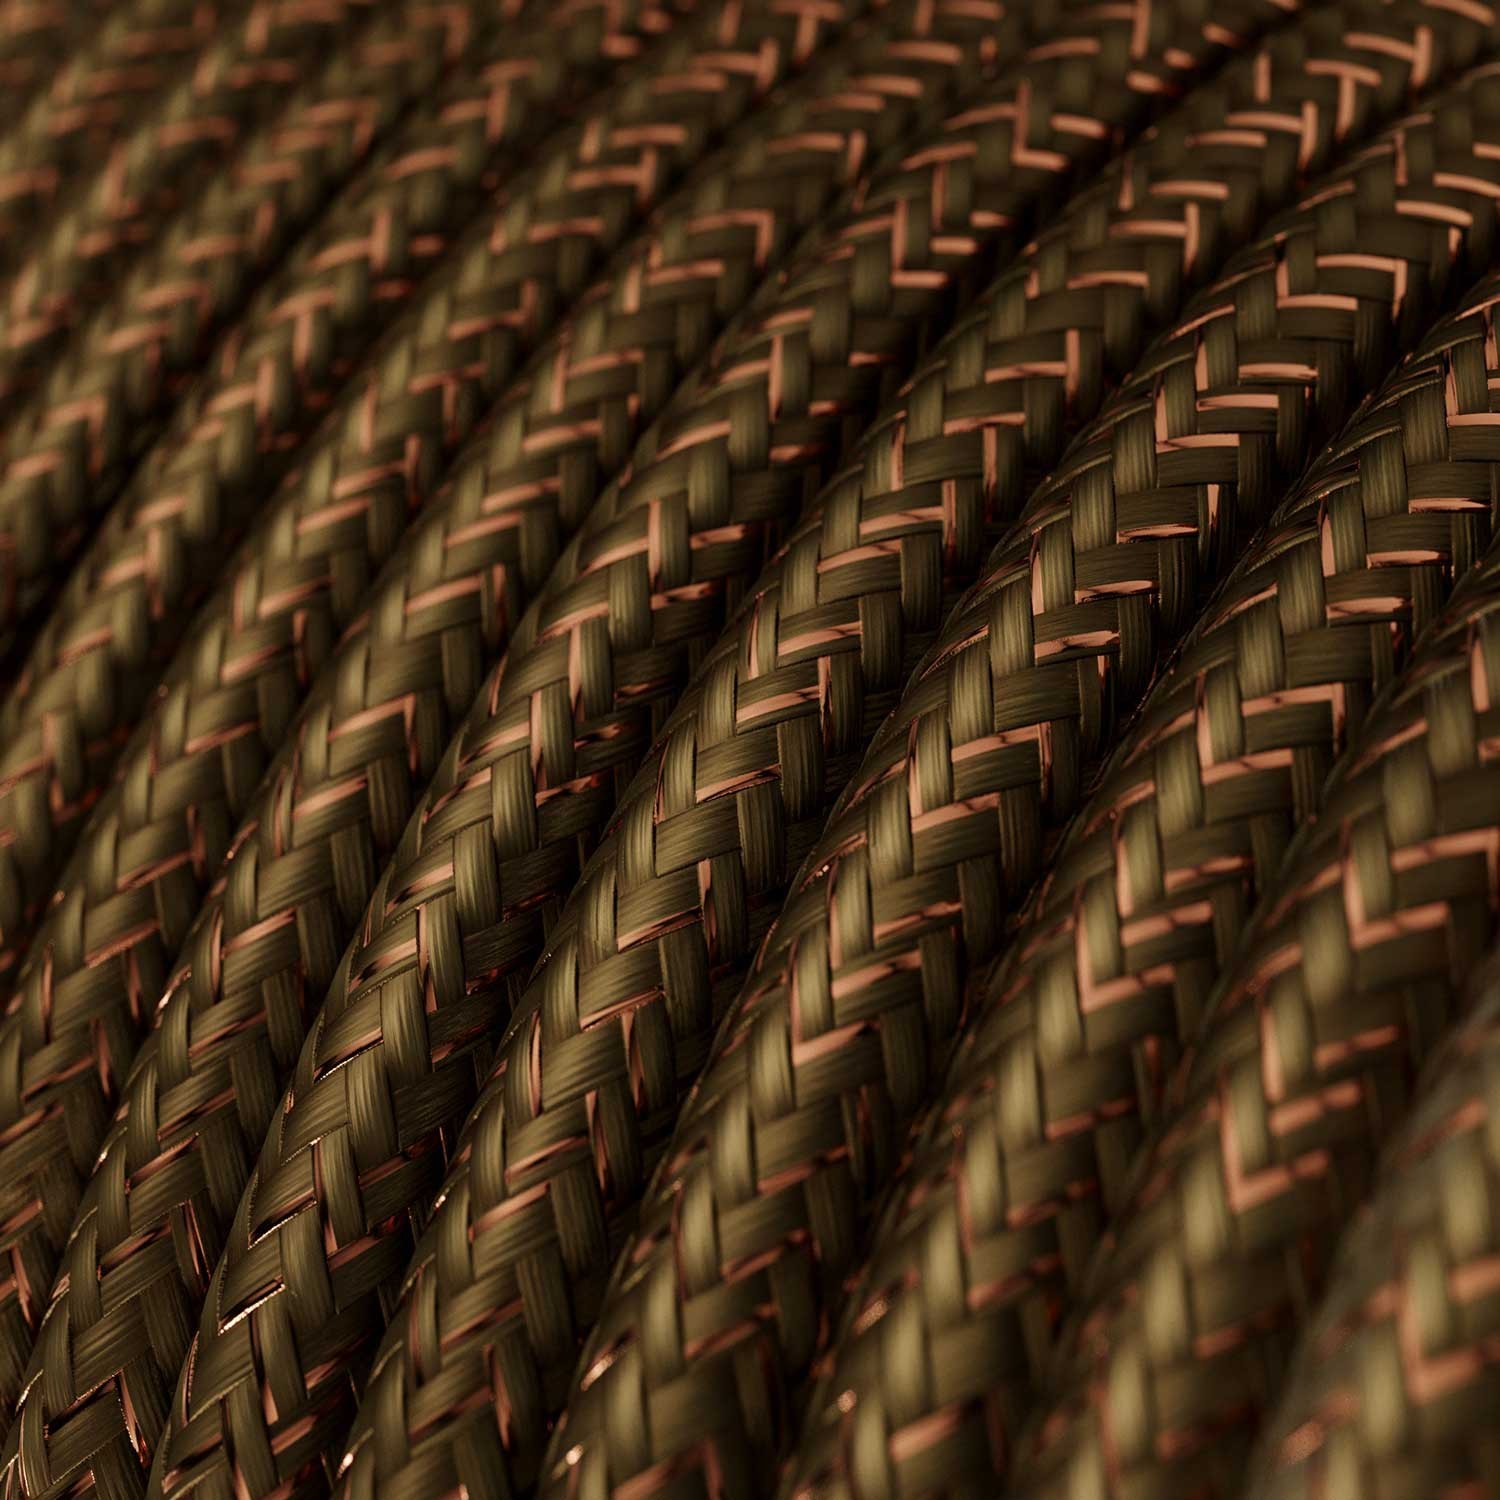 Okrugli blještavi tekstilni električni kabel RL13 - braon